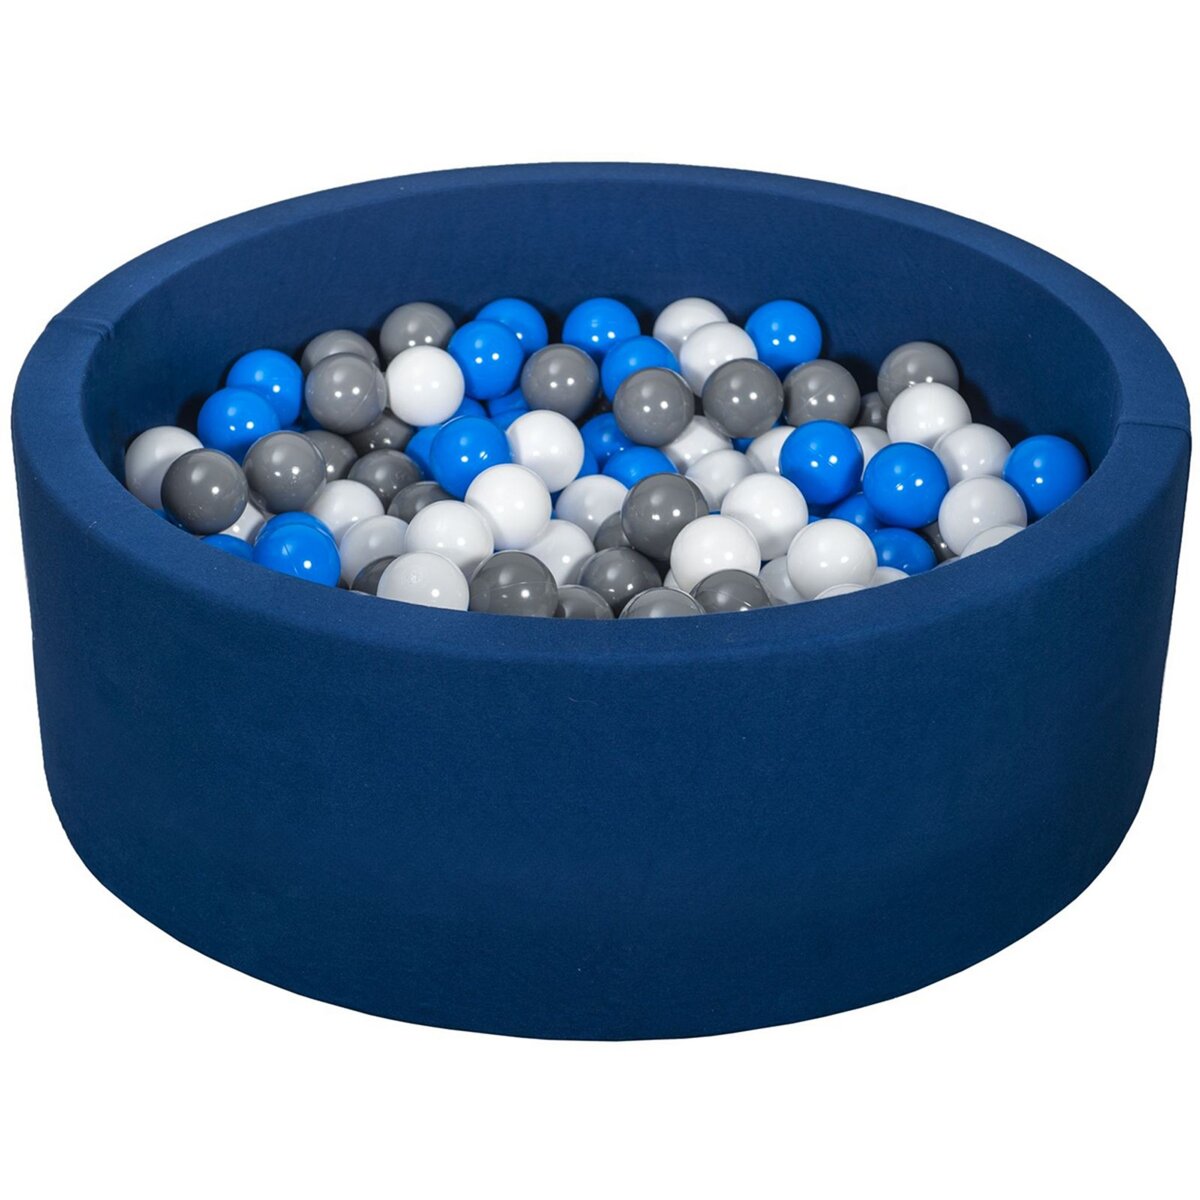  Piscine à balles Aire de jeu + 200 balles bleu marine blanc,bleu,gris